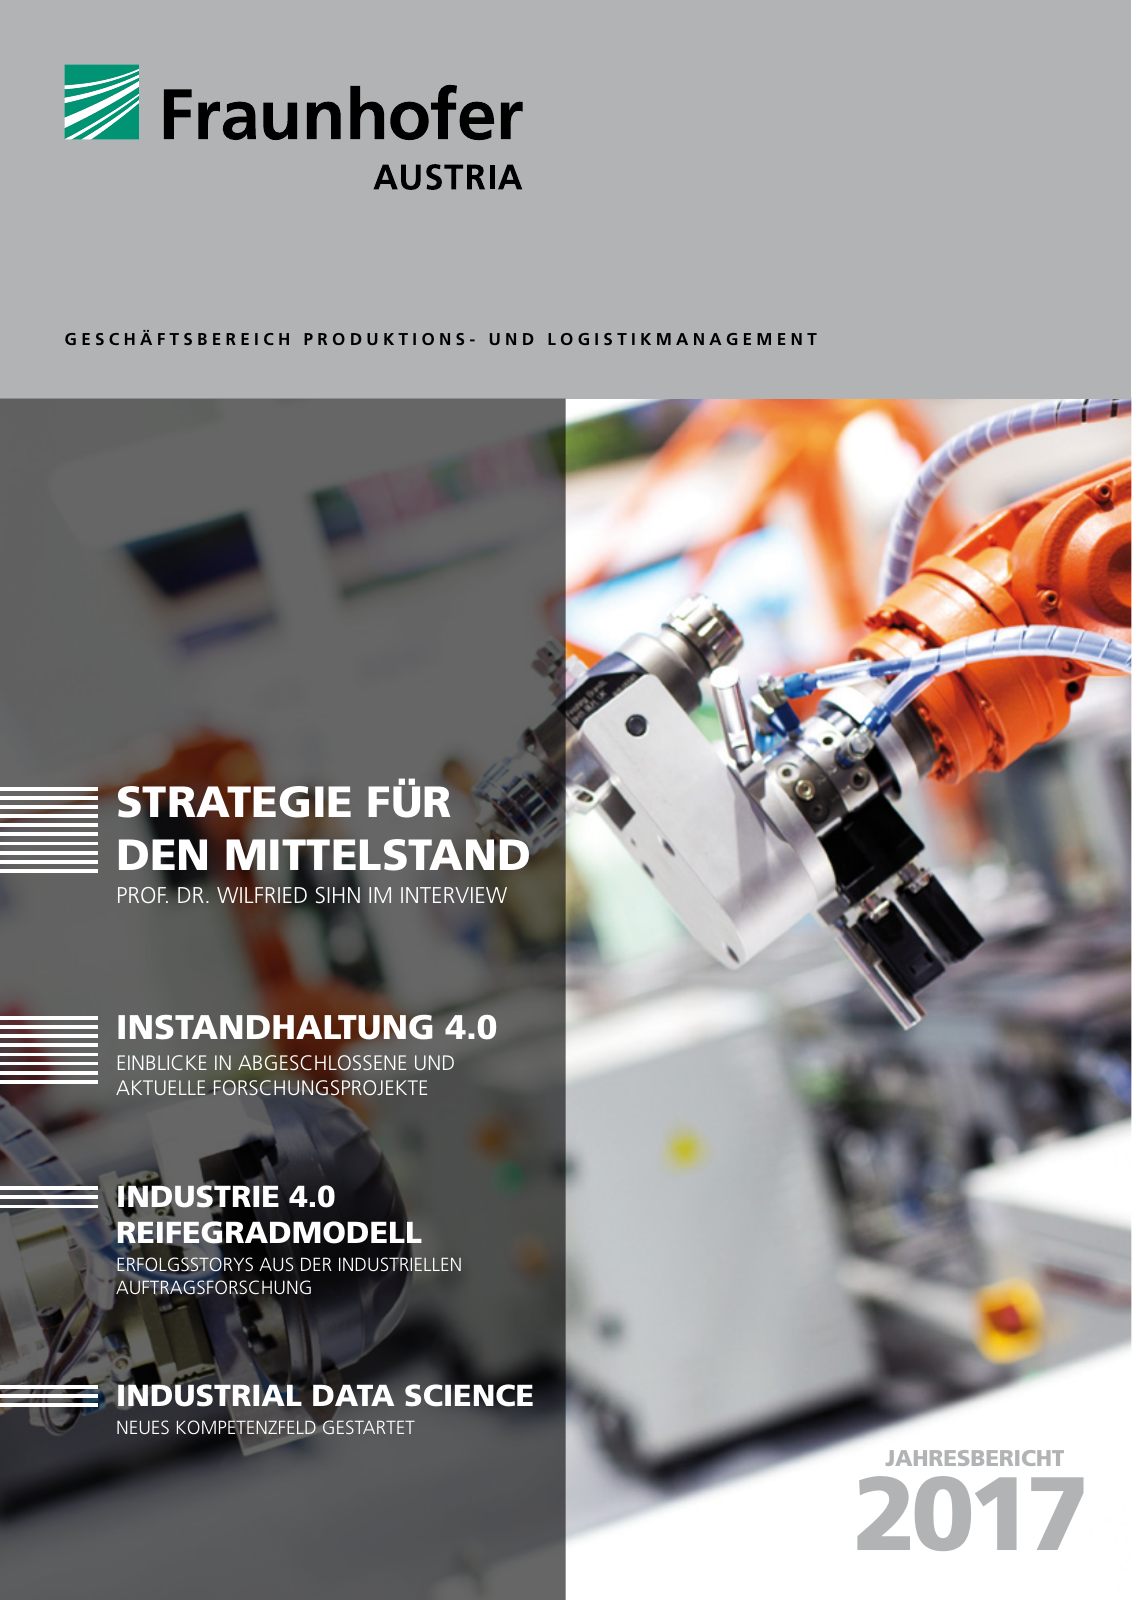 Vorschau Jahresbericht 2017 - Fraunhofer Austria Geschäftsbereich Produktions- und Logistikmanagment Seite 1